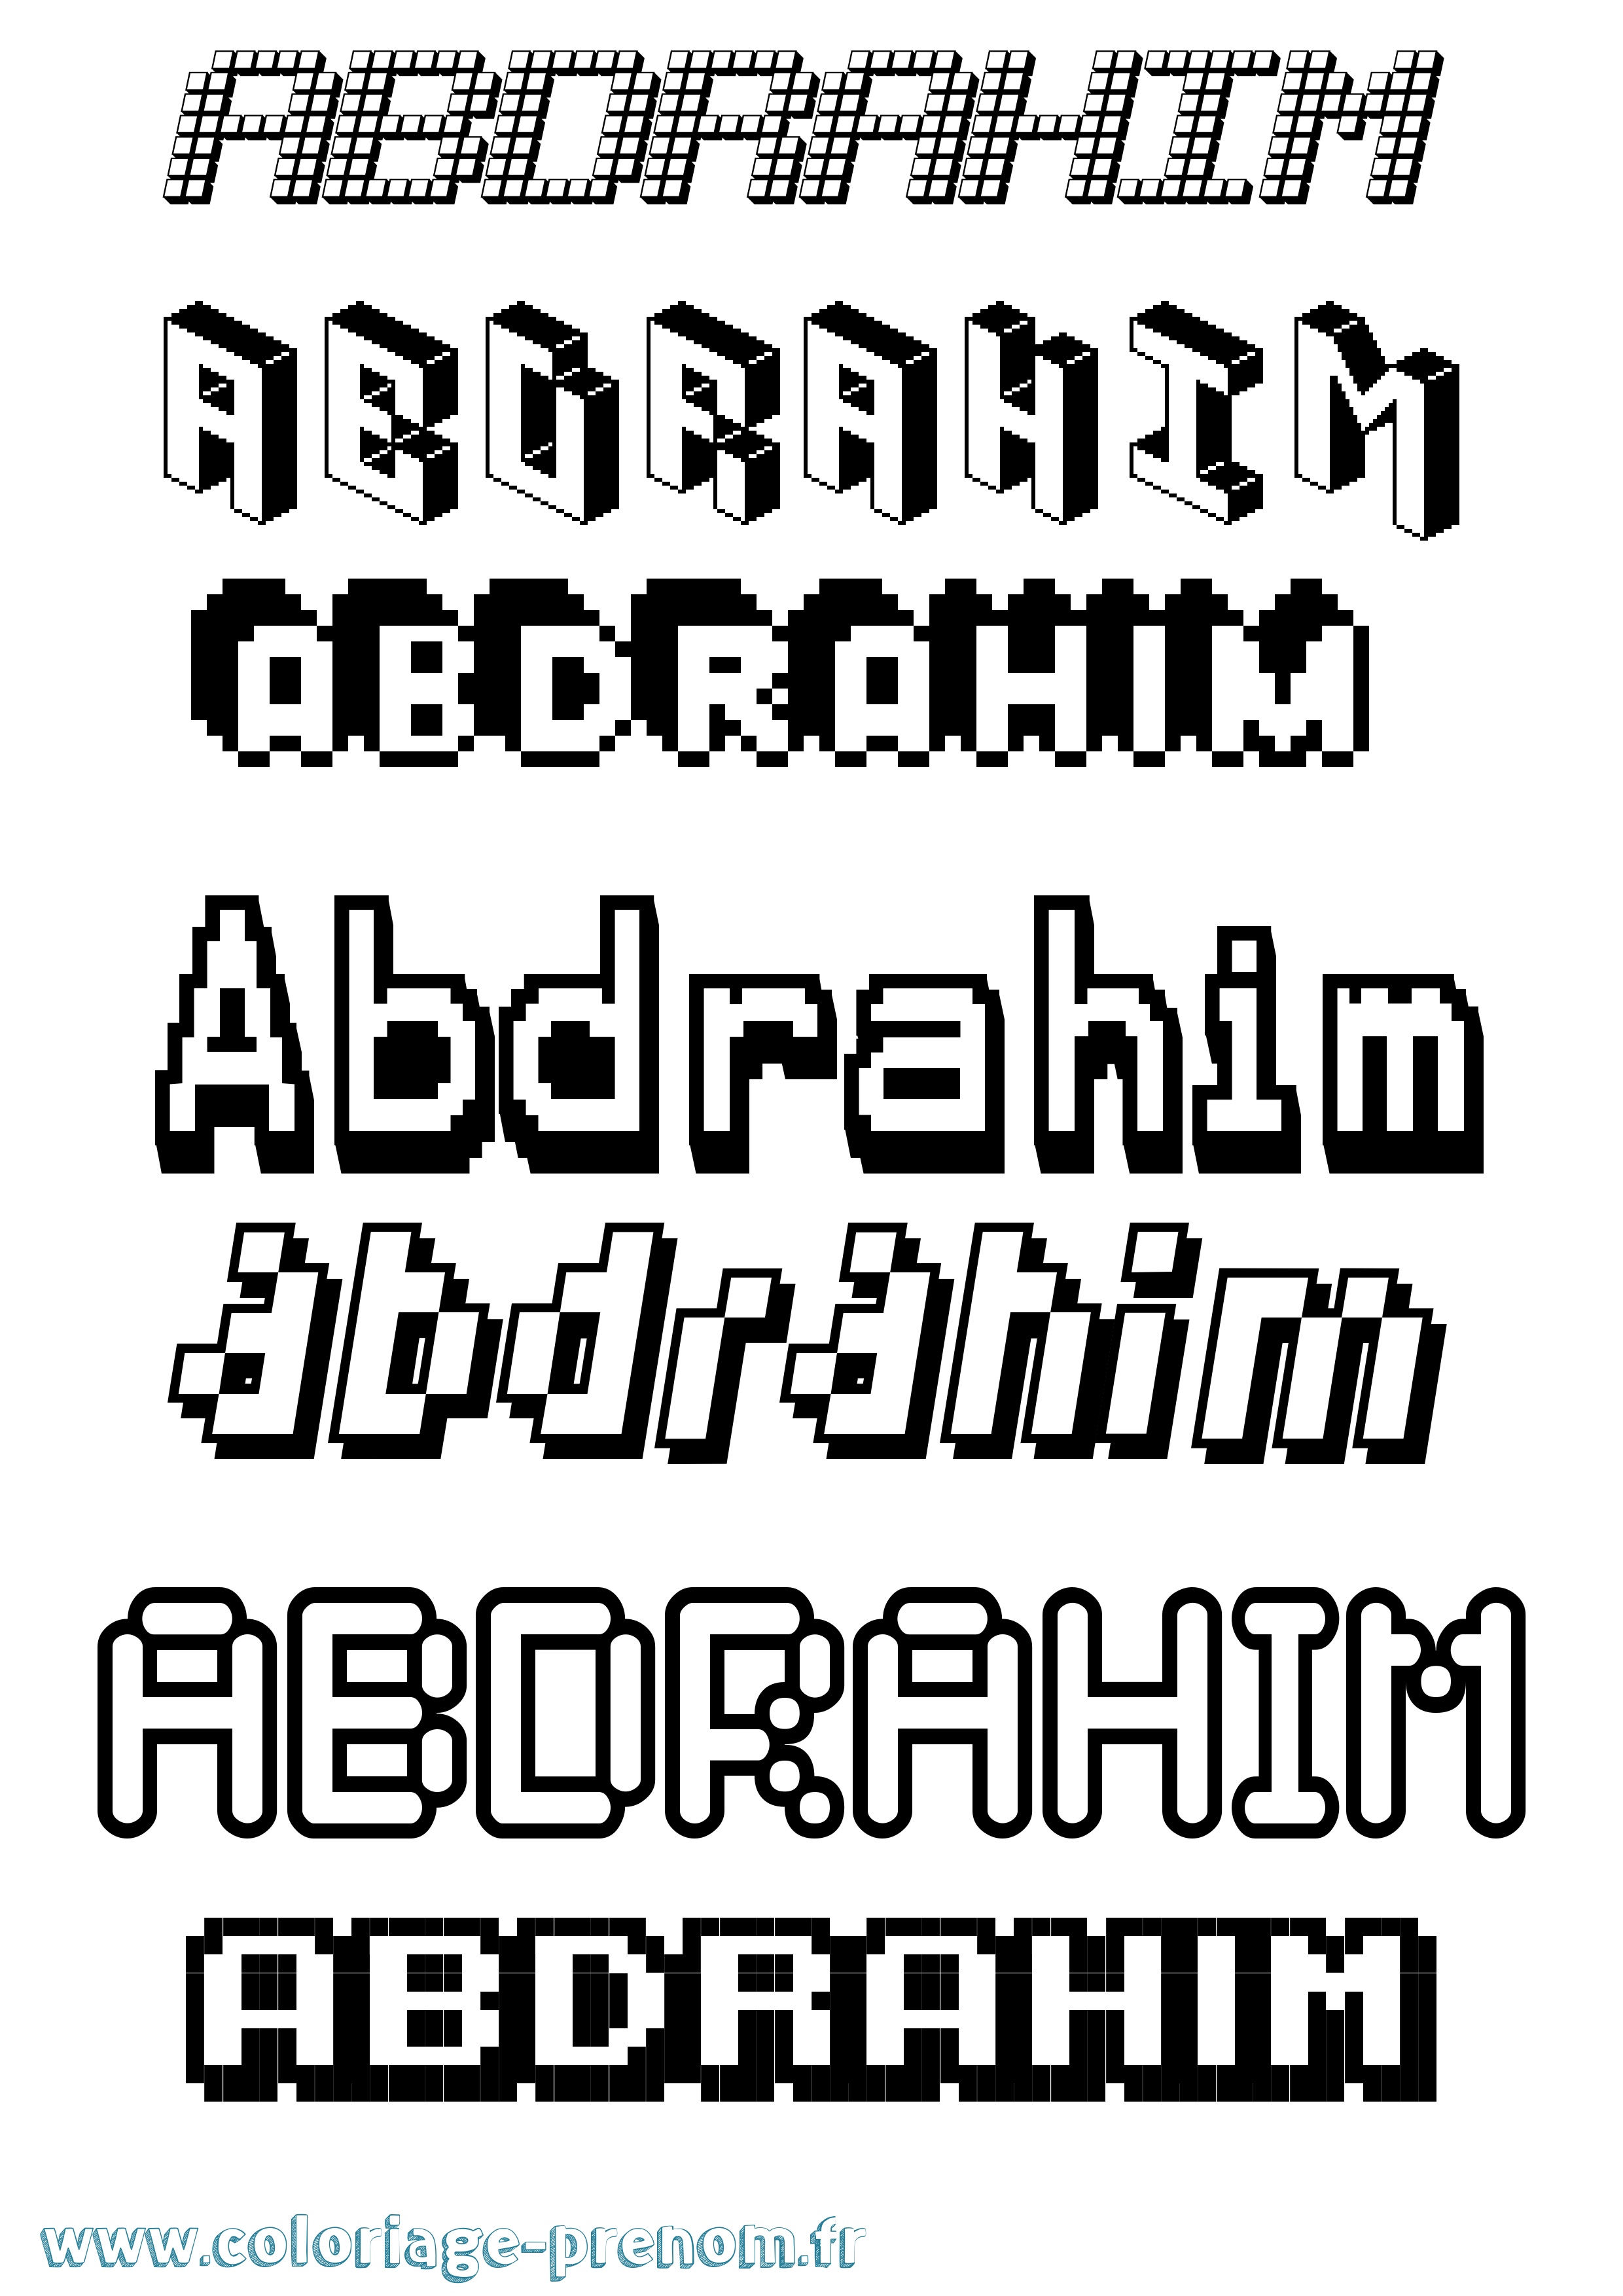 Coloriage prénom Abdrahim Pixel